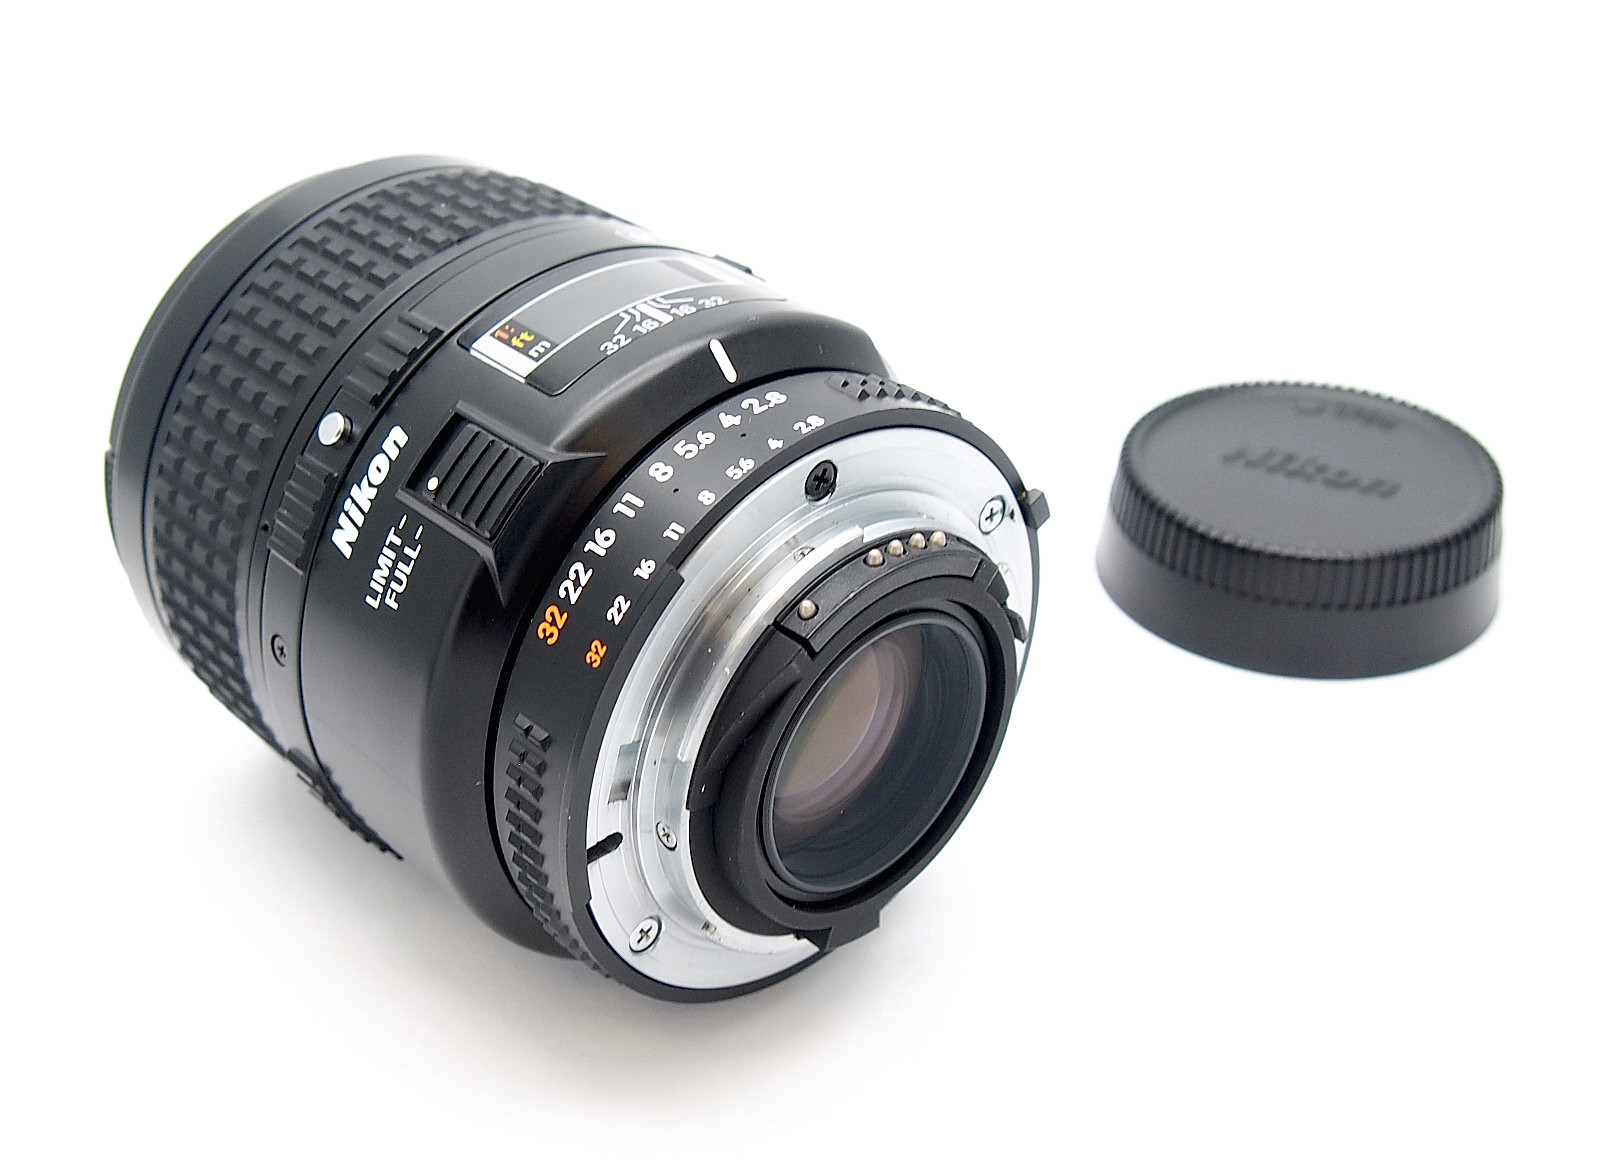 Nikon Micro-Nikkor 60mm F2.8 D AF Mount Lens, Mint & Box #8650